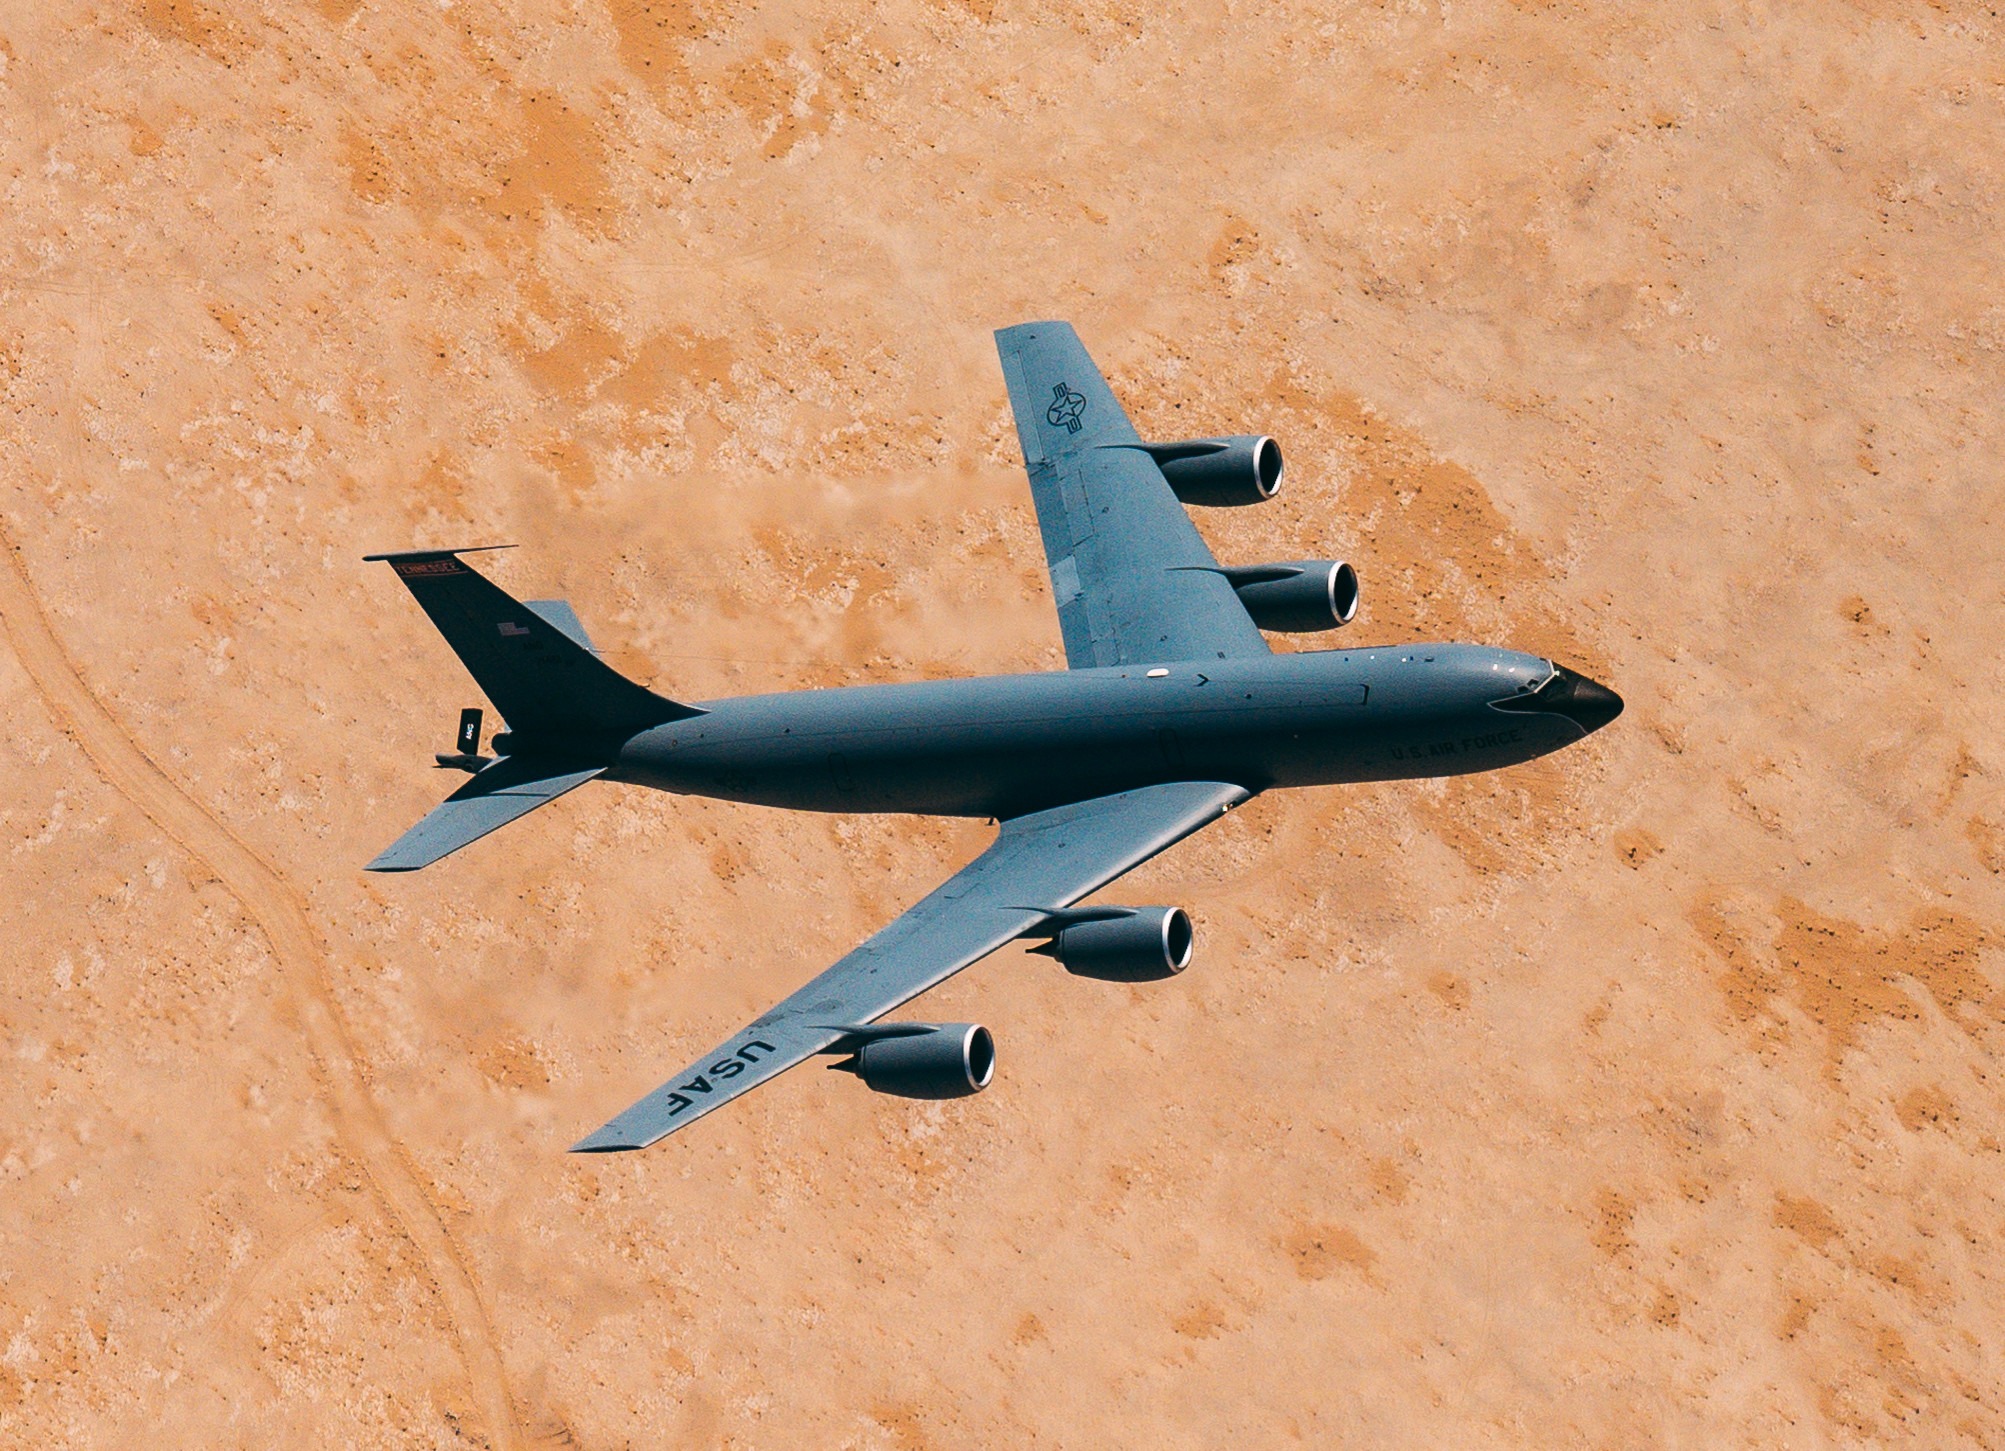 aircraft flying over desert